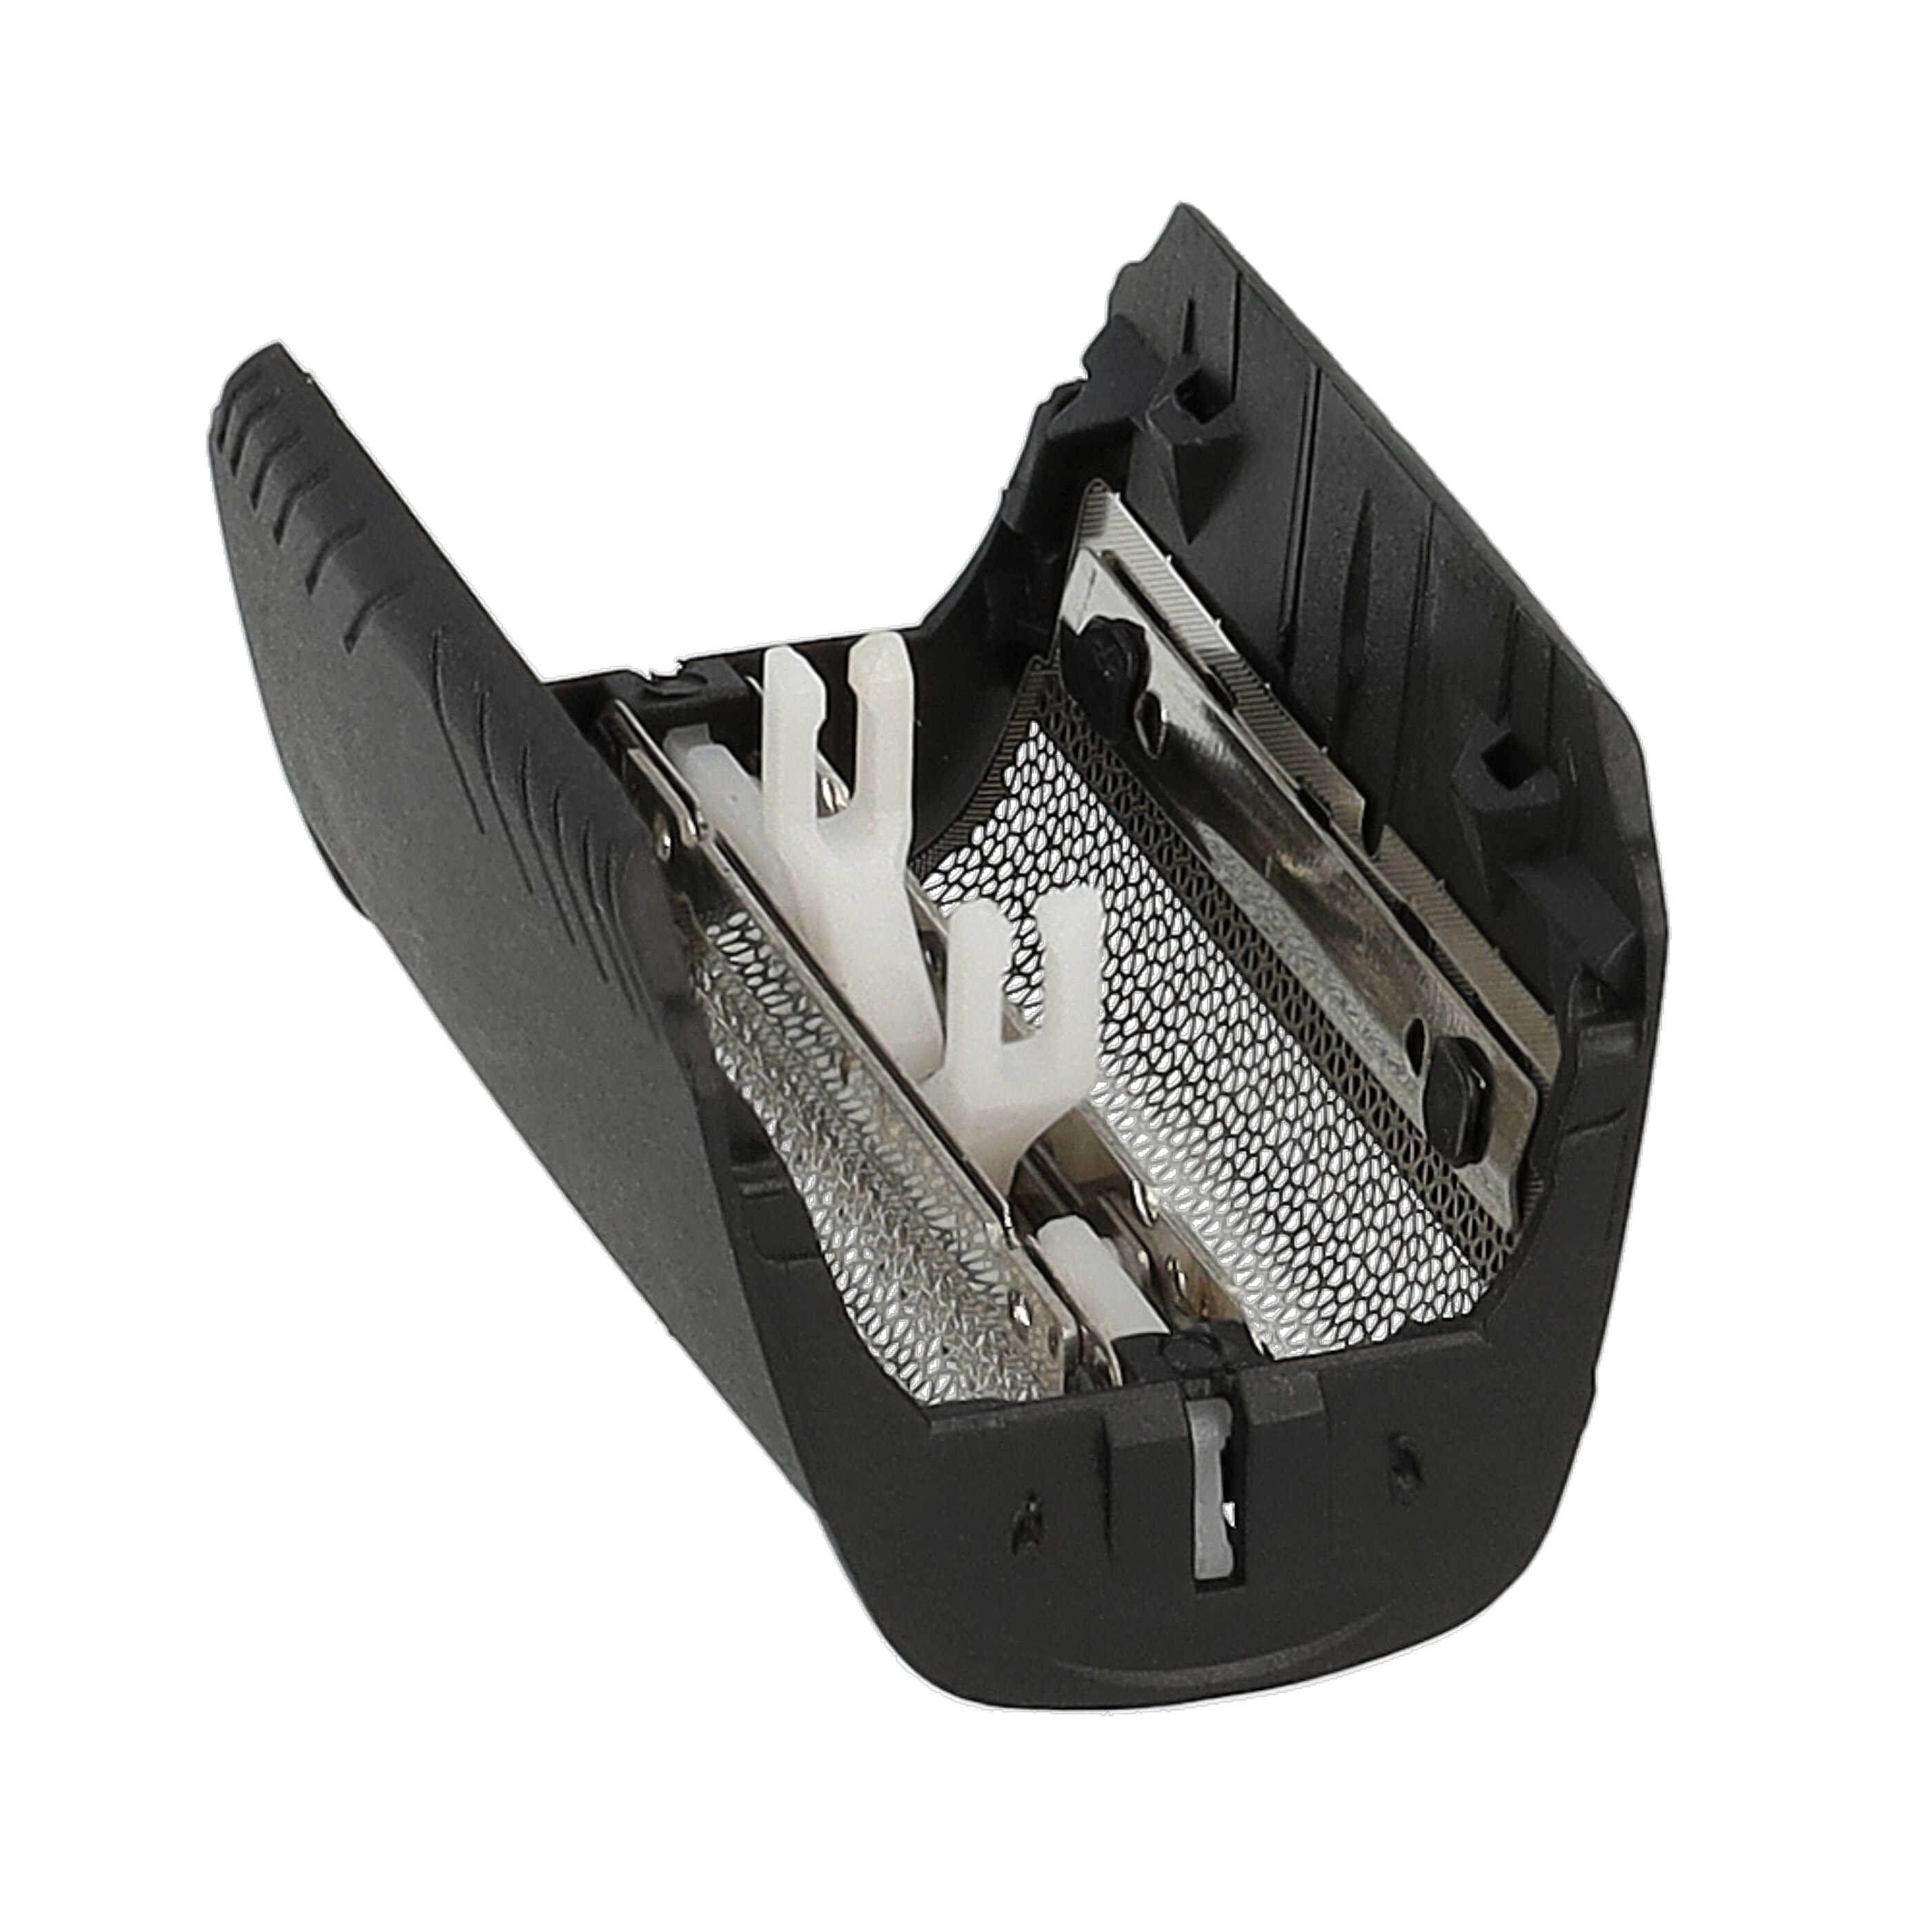 Combipack remplace Braun 30B Mul, 30B pour rasoir Braun - grille + couteaux, noir